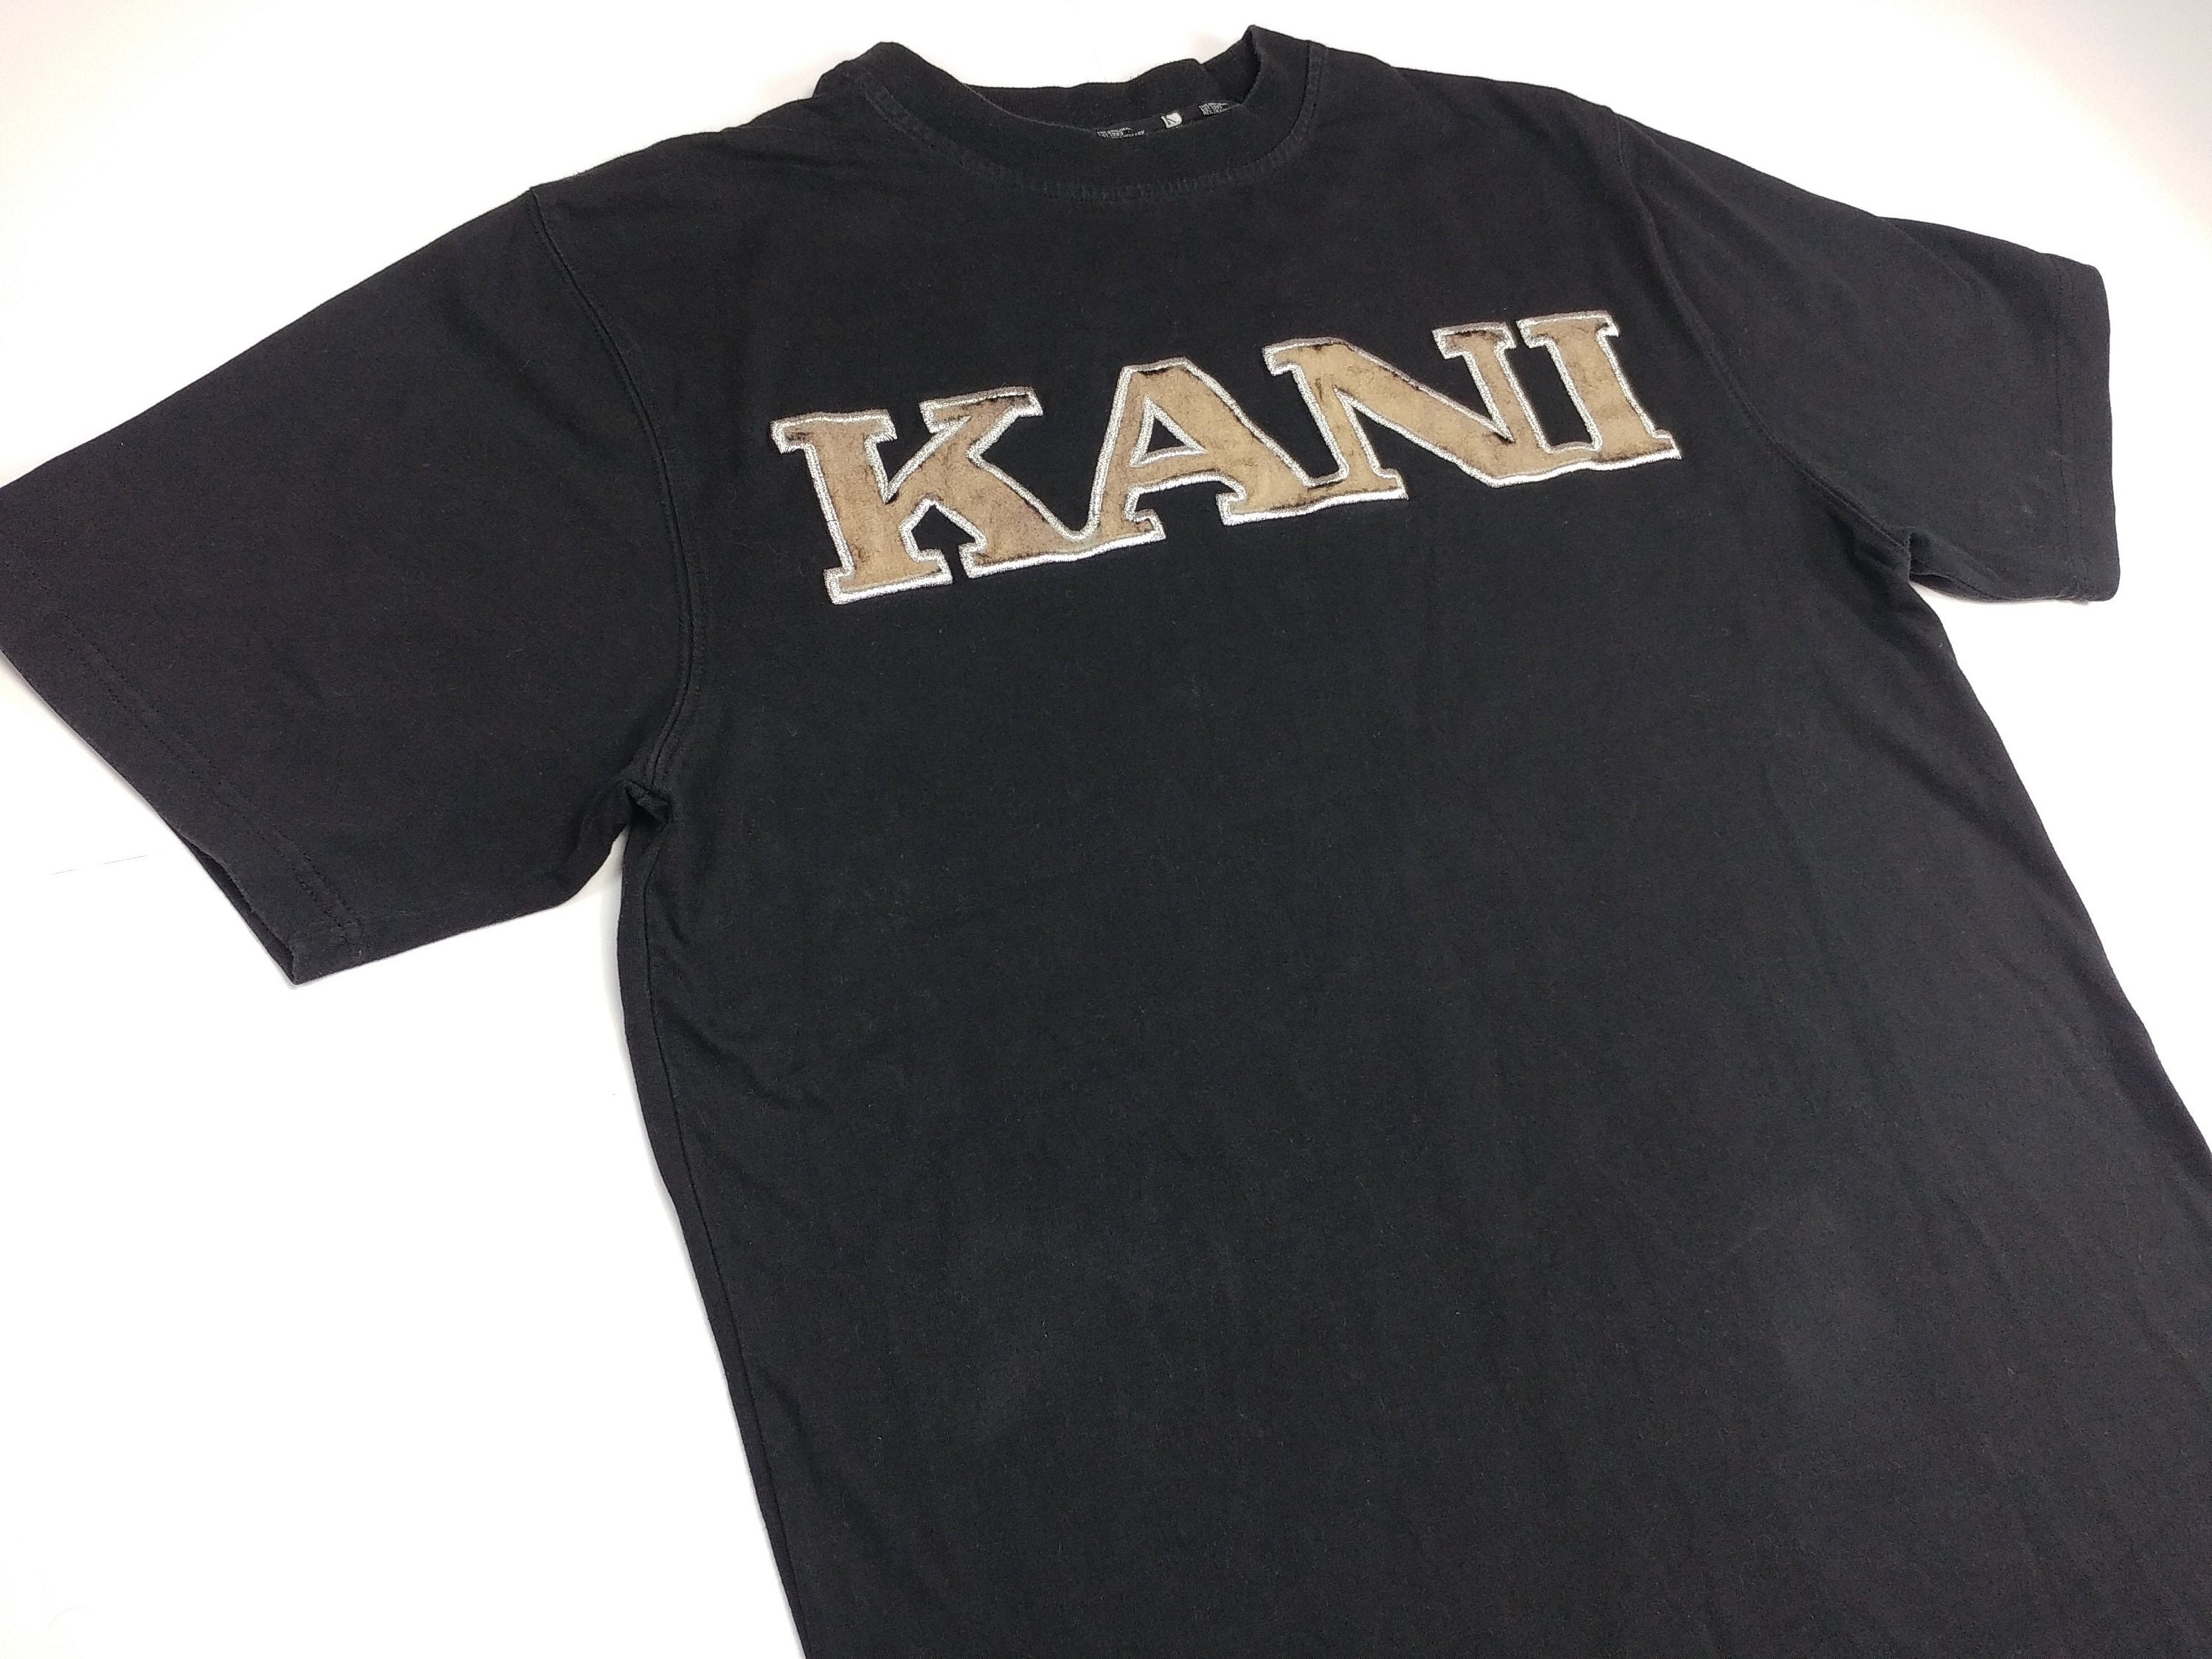 KARL KANI Jersey Black Vintage Hip Hop T-shirt 90s Hip Hop - Etsy